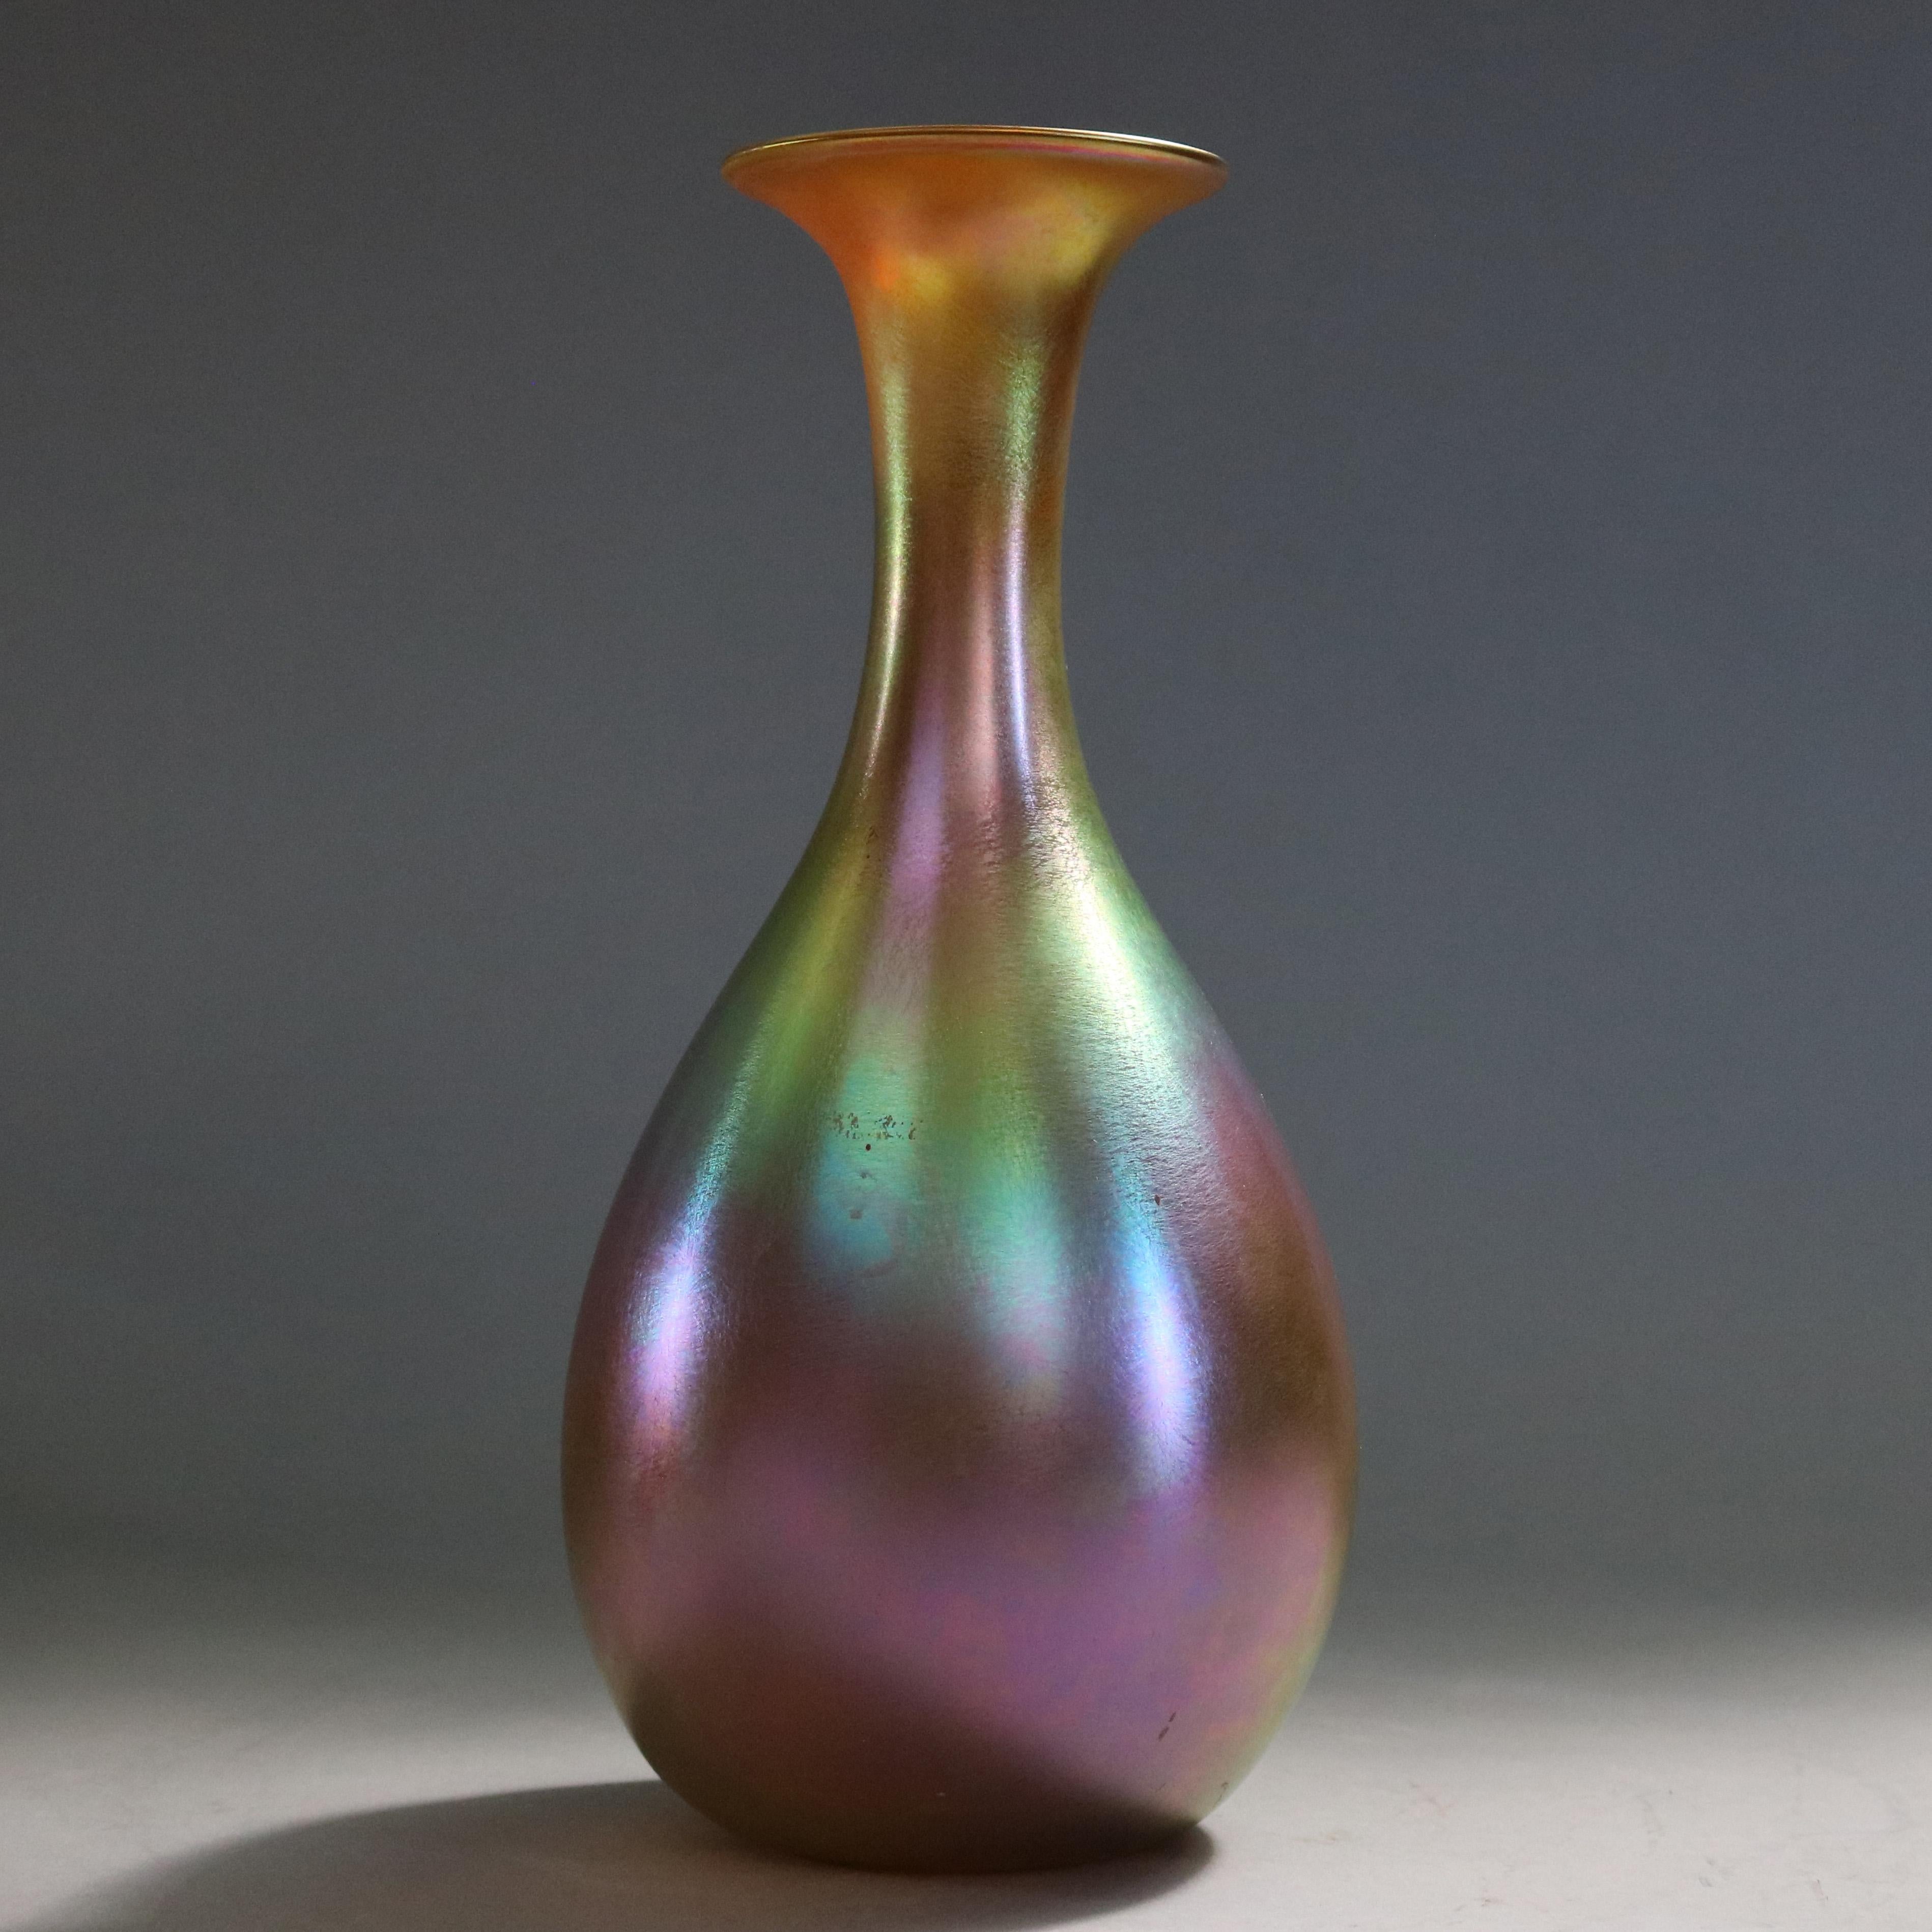 Hand-Crafted Oversized Antique Art Nouveau Aurene Art Glass Vase, Signed Quezal, c1900